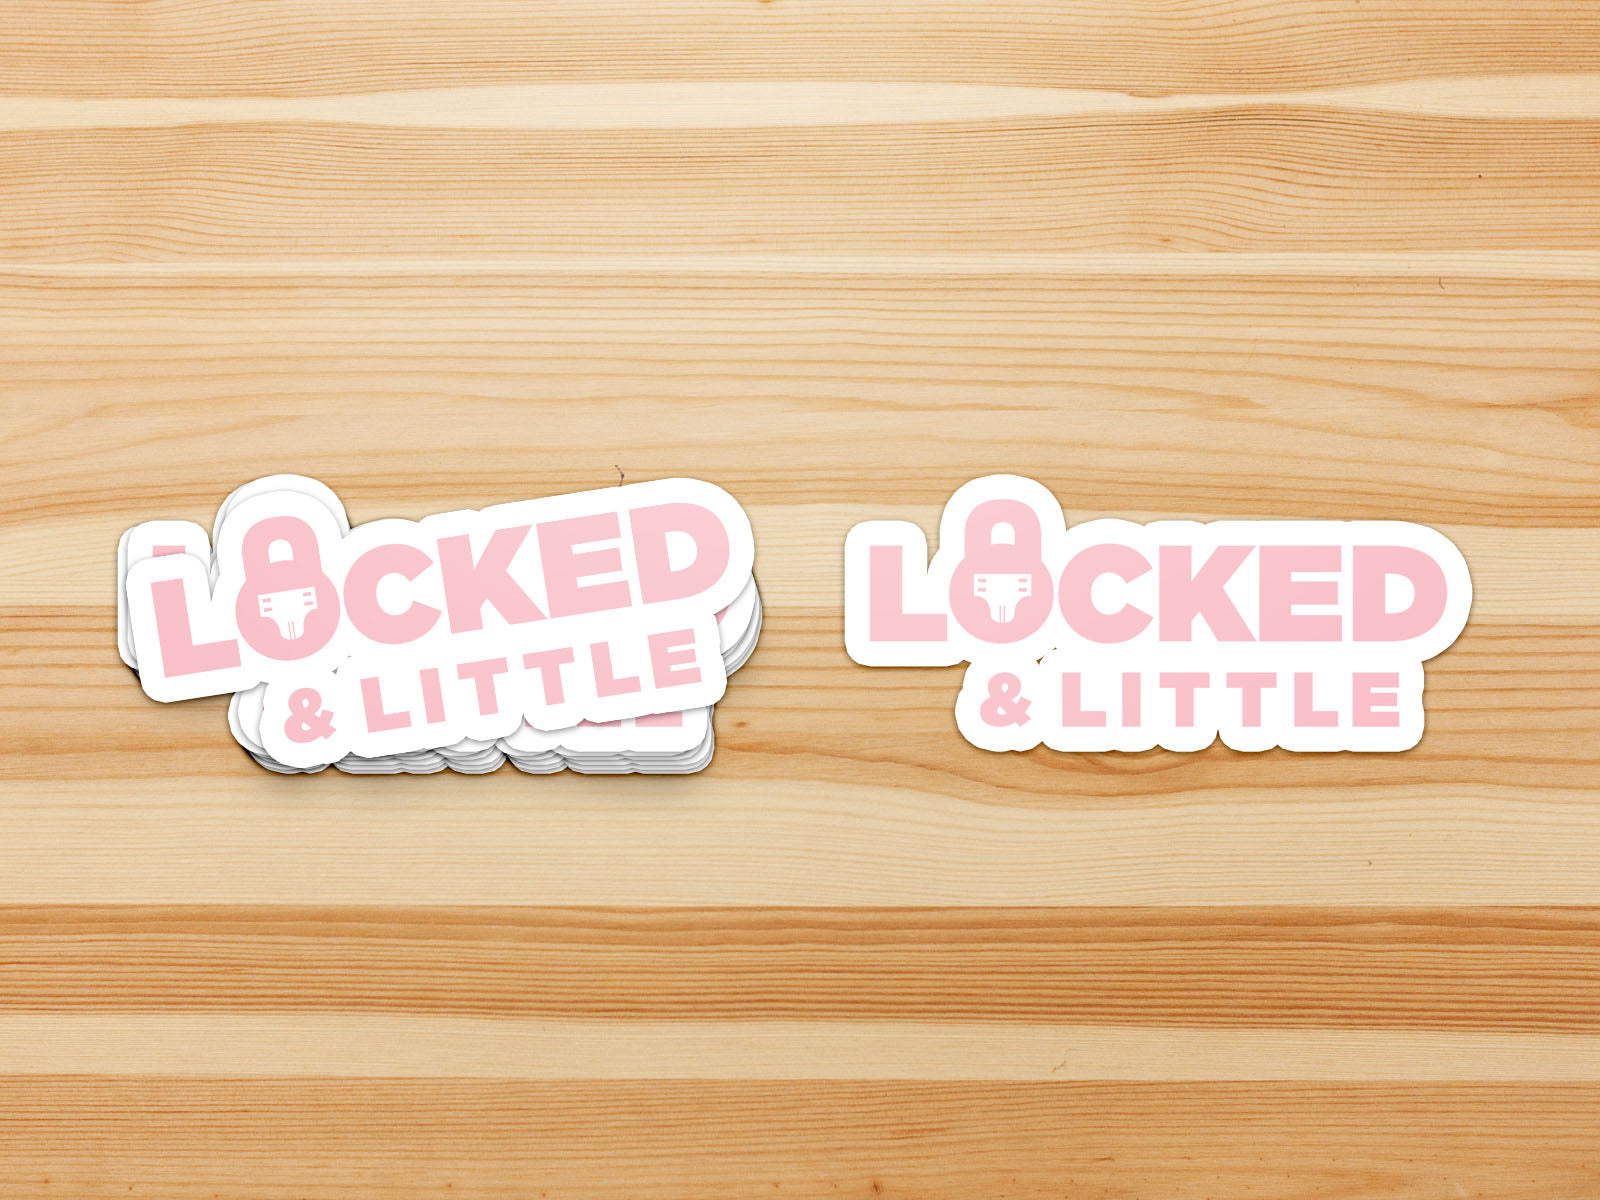 Locked & Little - Sticker - Lifestyle ABDL